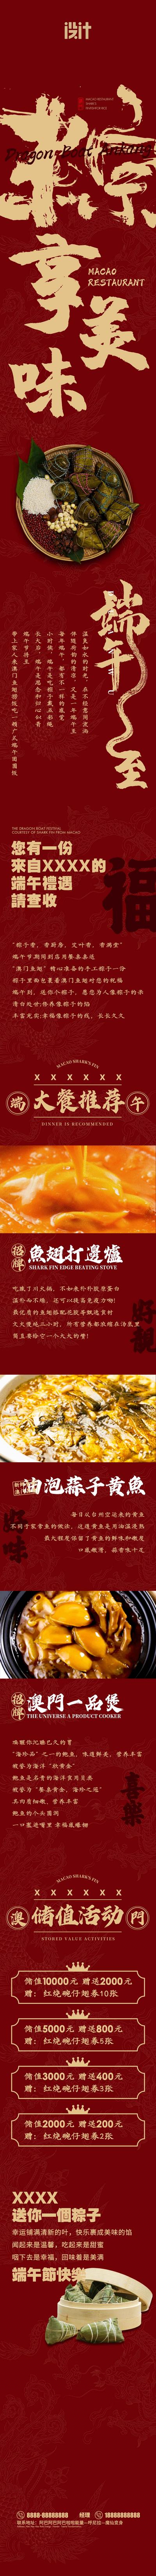 南门网 长图 美食 专题设计 端午节 中国传统节日 餐饮 粽子